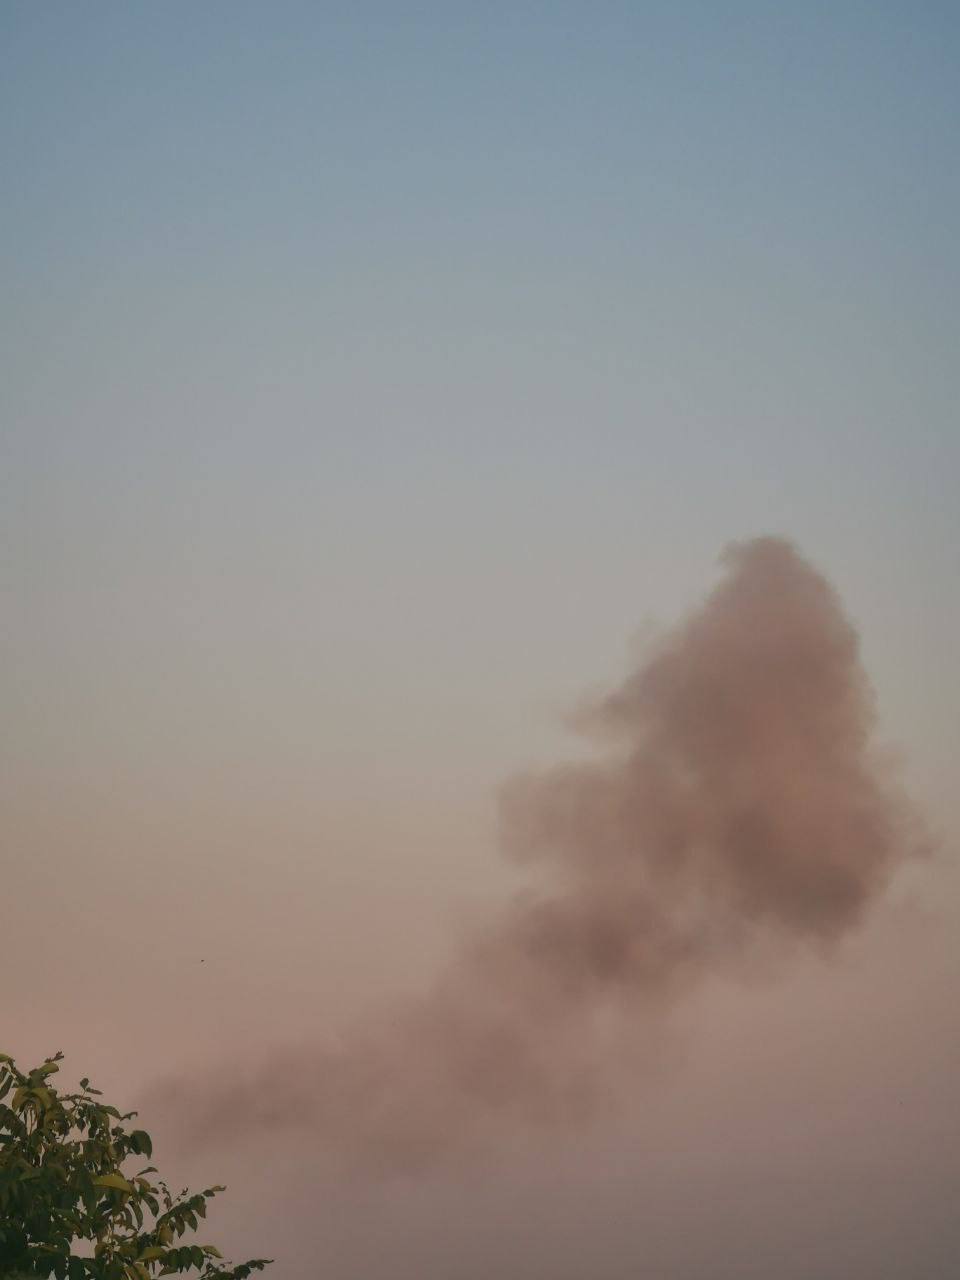 После подрыва части ракеты в небо поднялся дым.